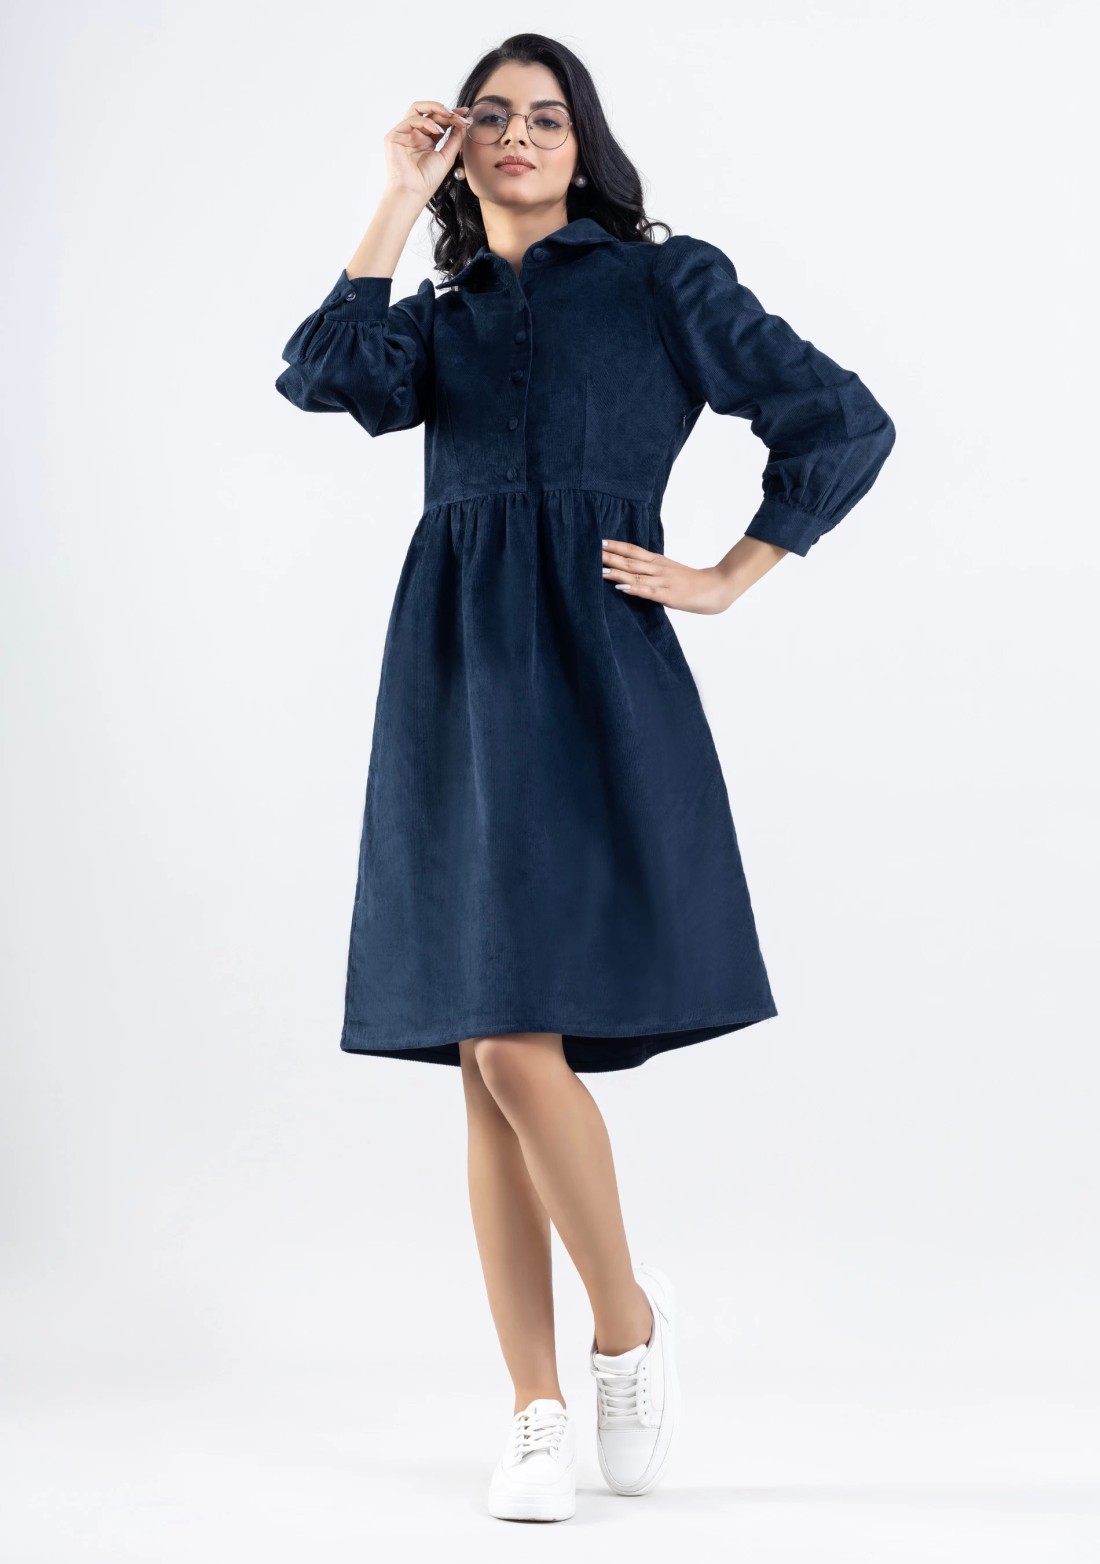 Buy Denim Blue Cotton Shirt Dress Online - Label Ritu Kumar International  Store View